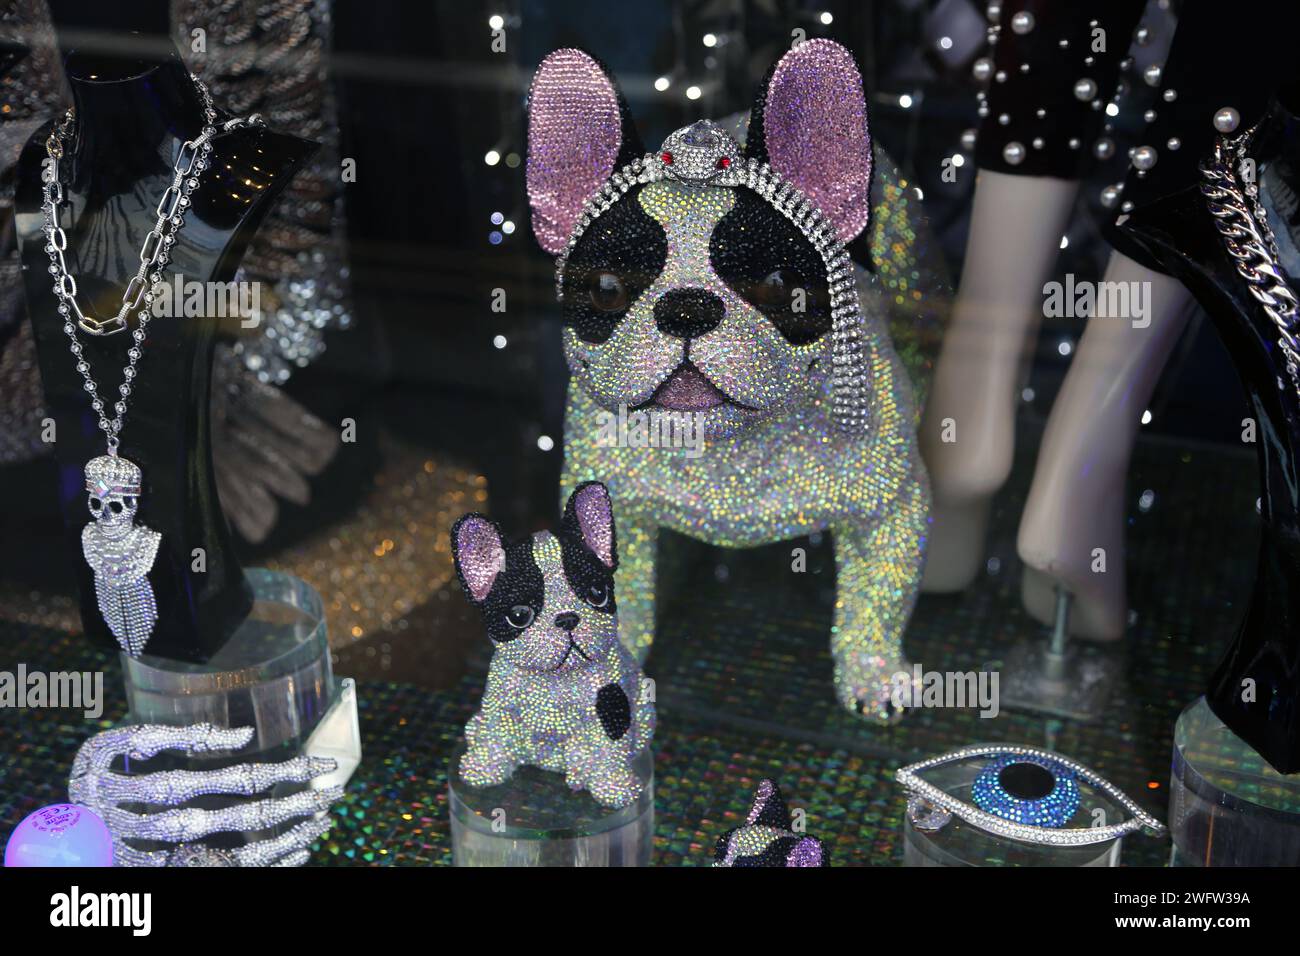 Ornements de Bulldog français Bejewelled et bijoux dans la vitrine Chelsea Londres Angleterre Banque D'Images